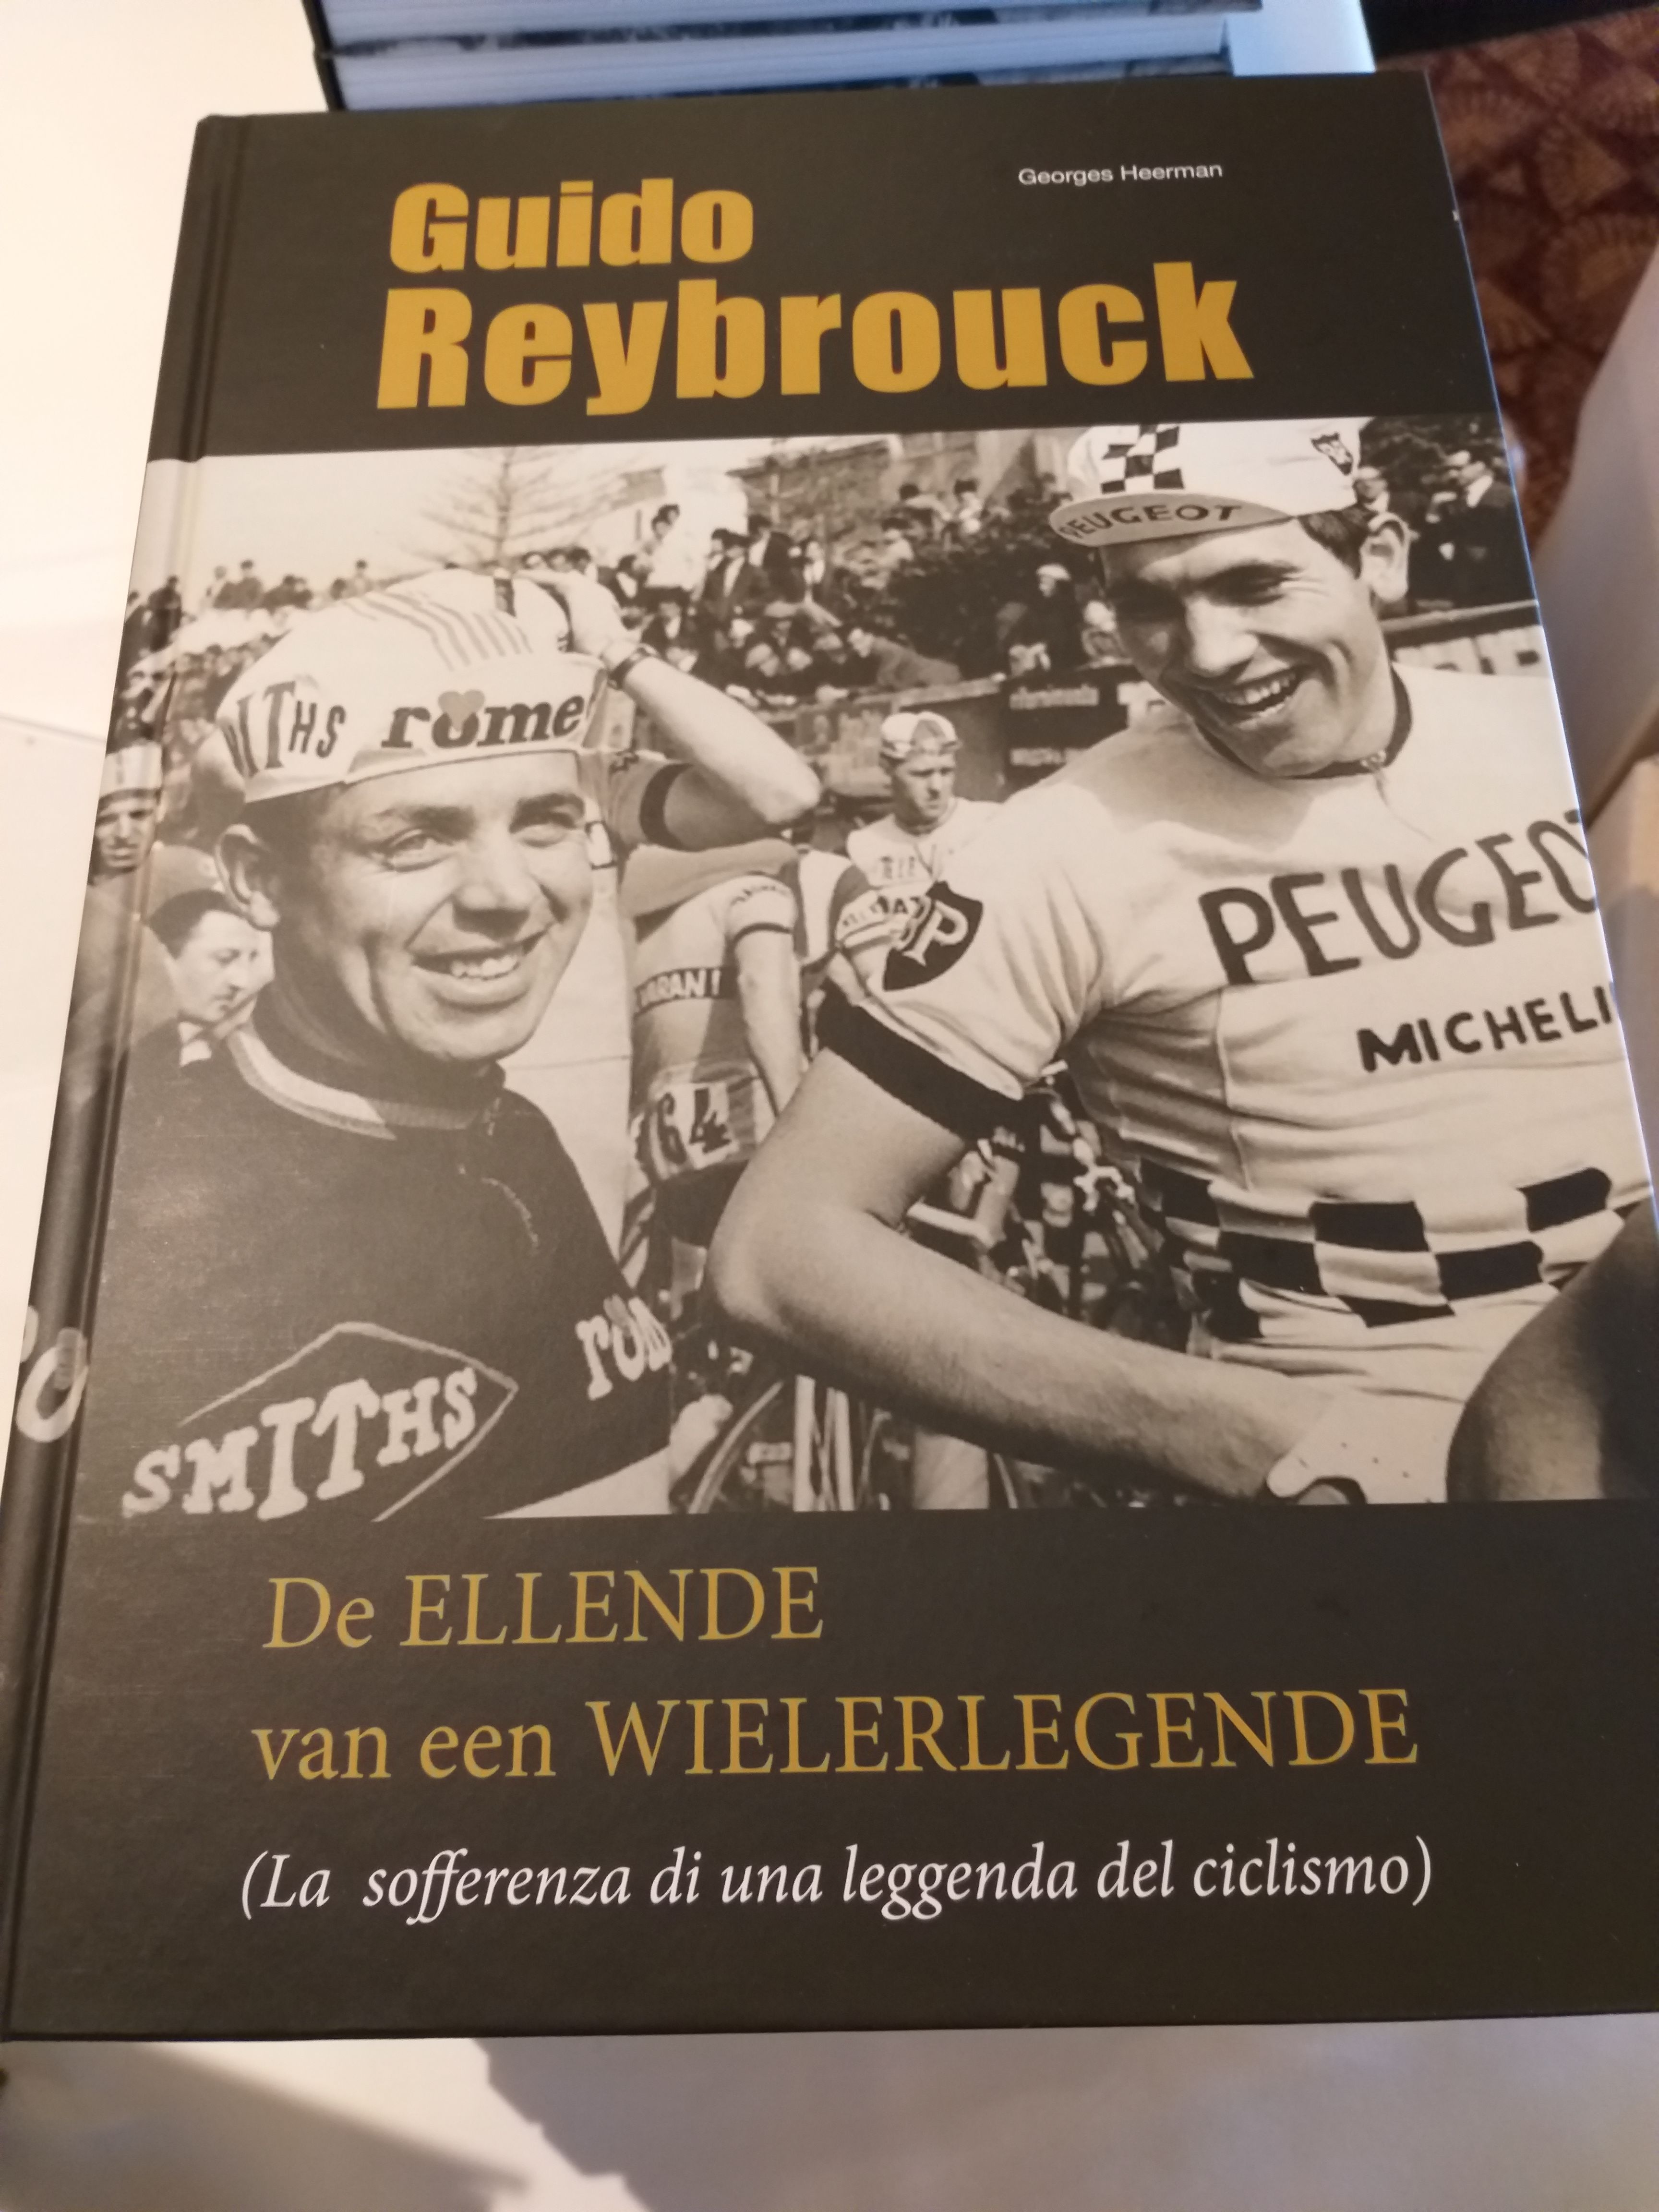 Guido Reybrouck stelde zijn boek "De ellende van een wielerlegende" voor aan boord van de Pride of Bruges.